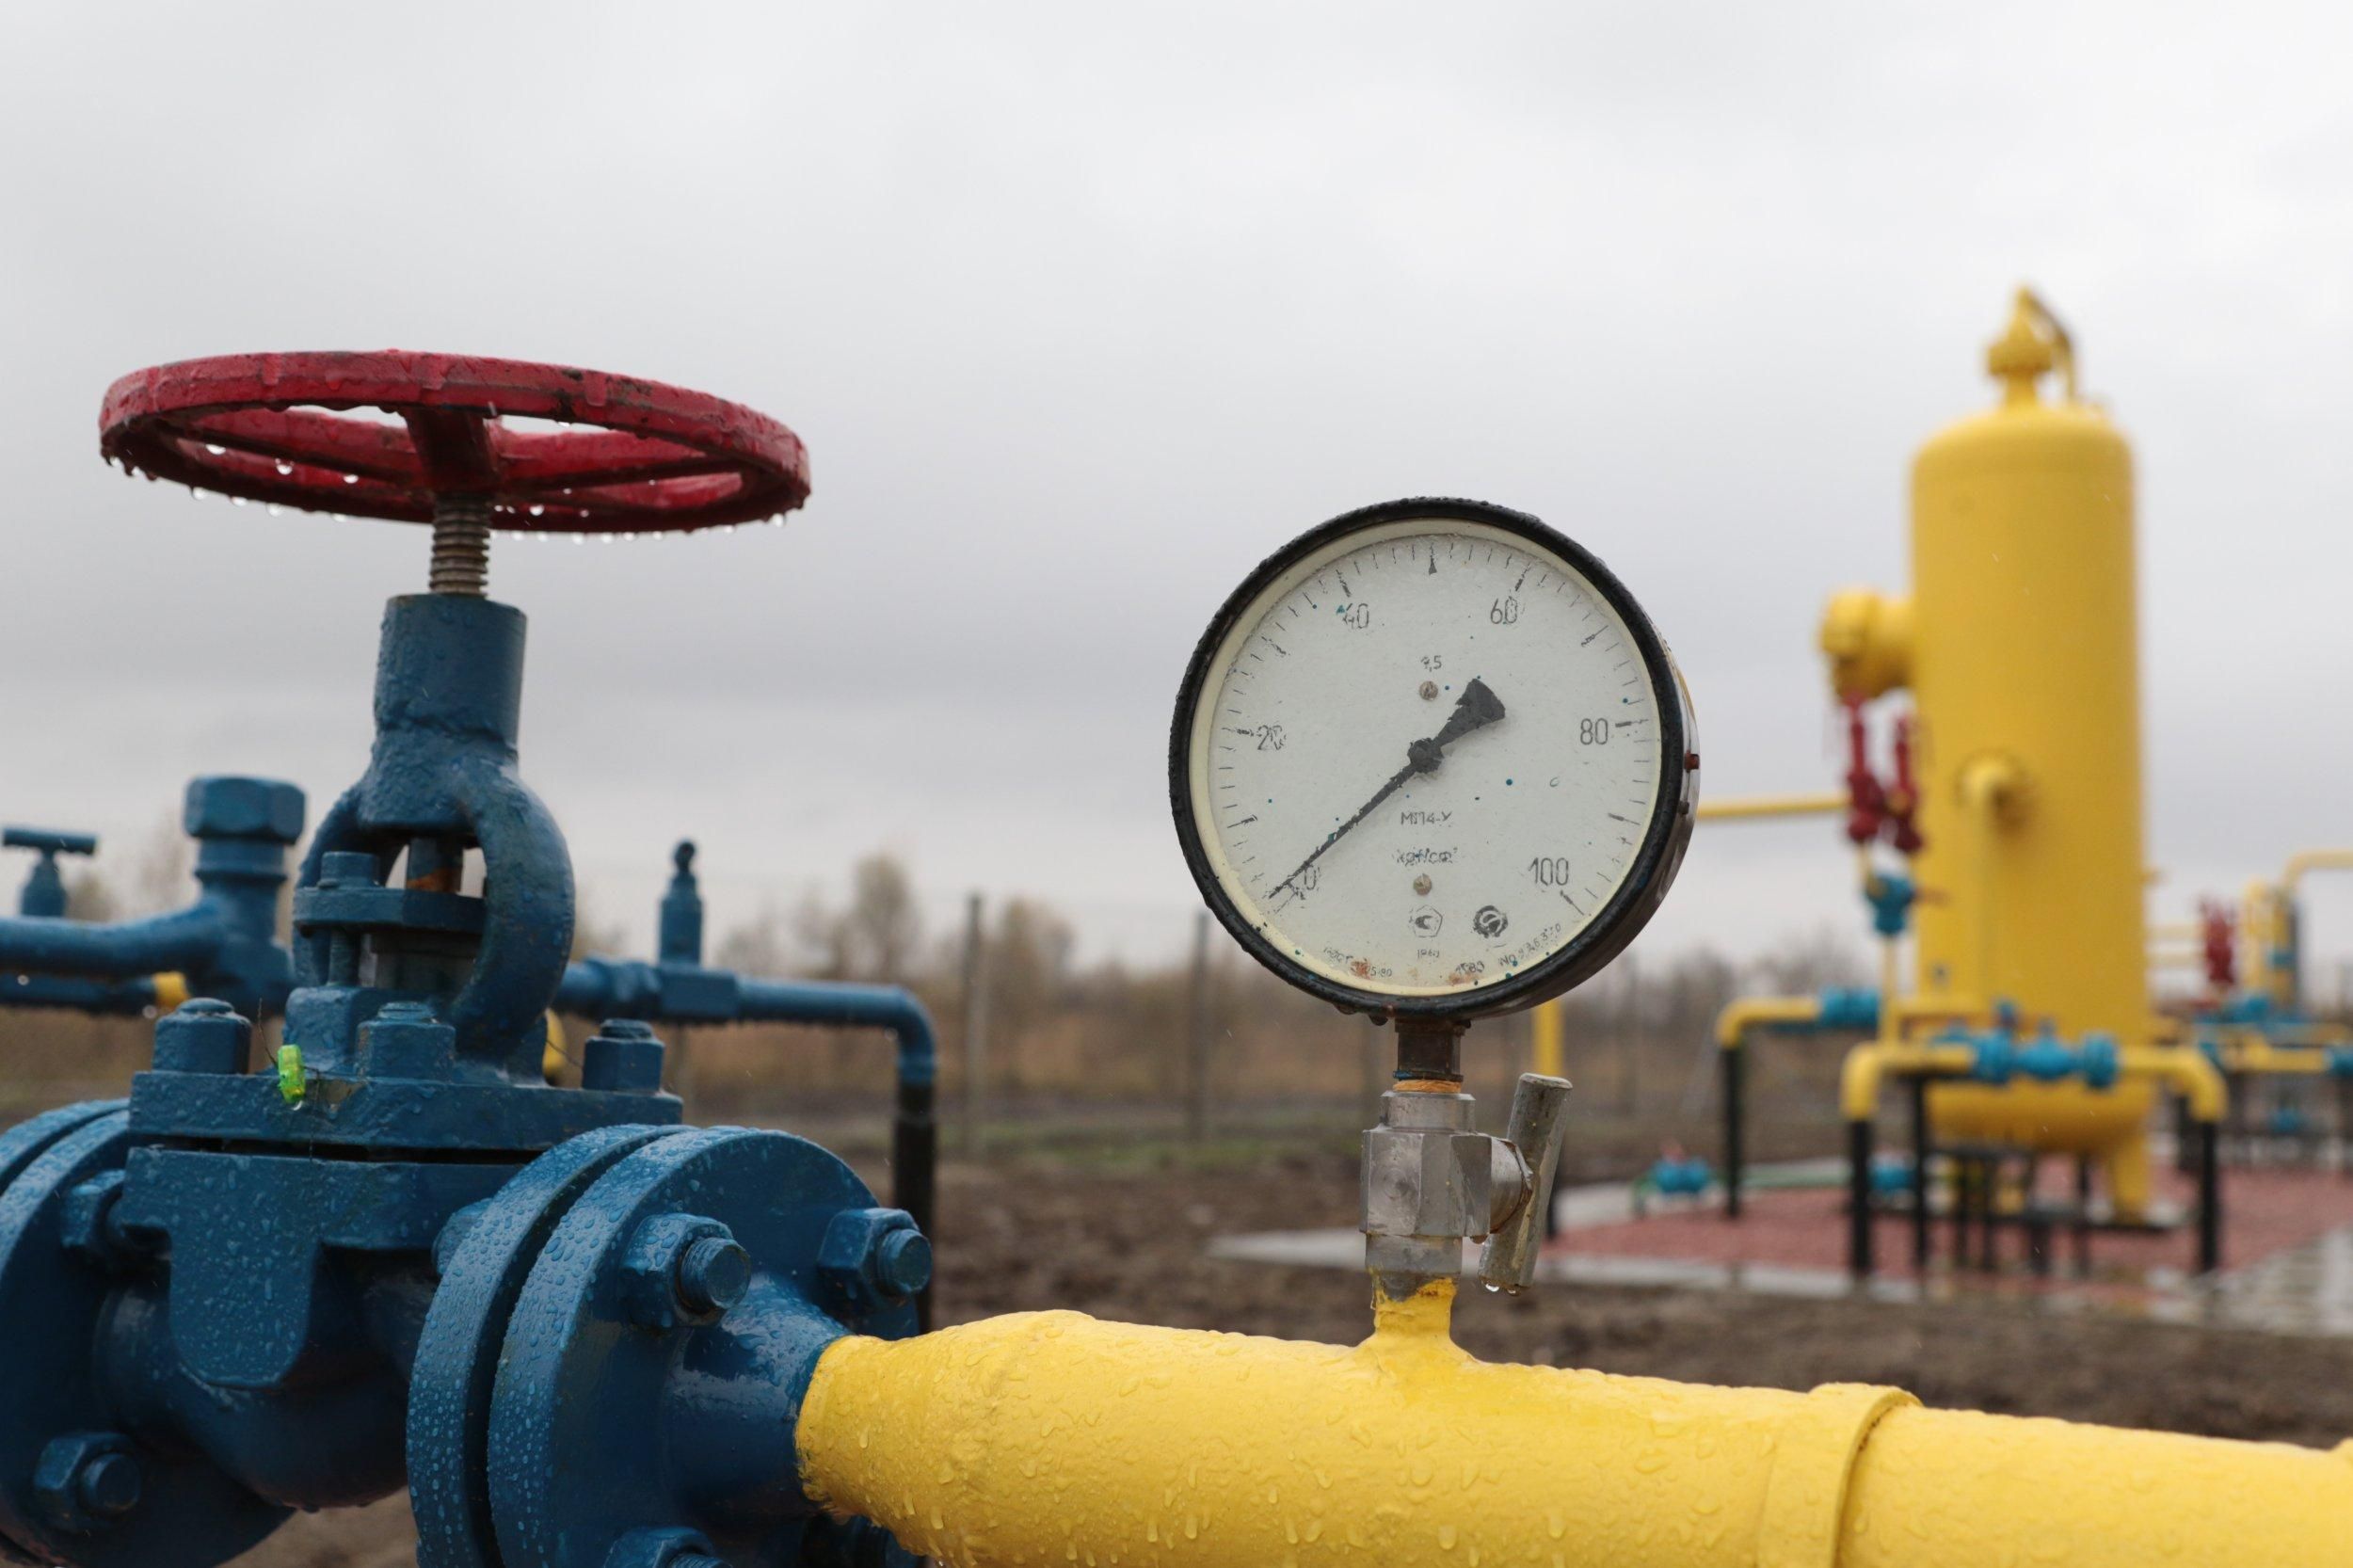 "Укргаздобыча" сократила добычу газа на 4,5% с начала года - Украина новости - Экономика